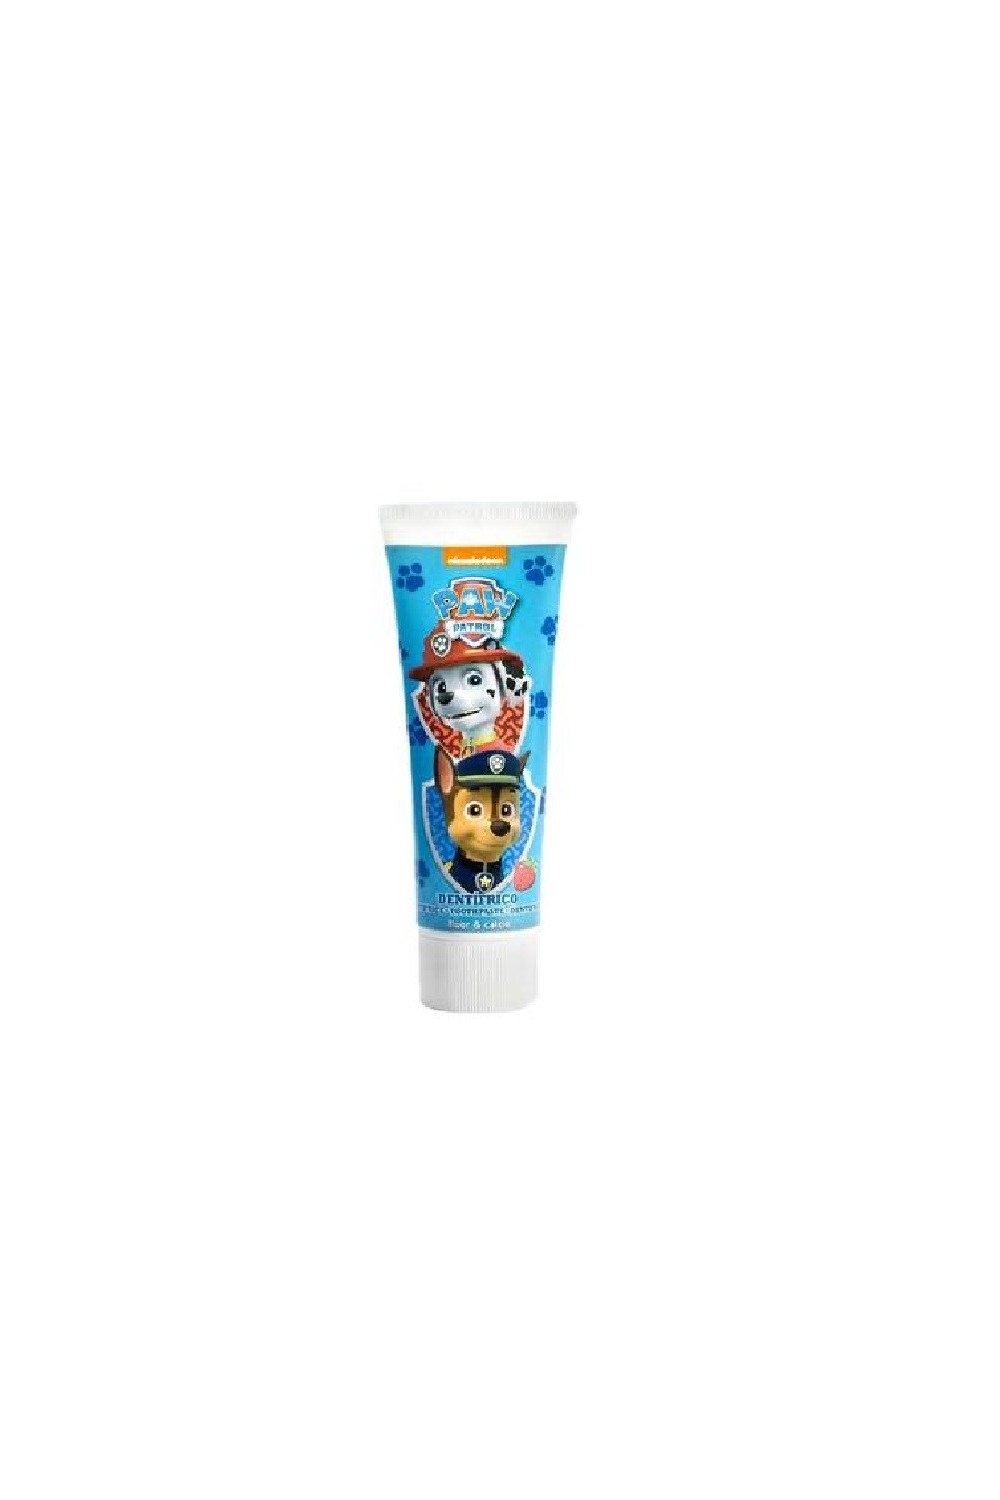 Nickelodeon Patrulla Canina Toothpaste 75ml